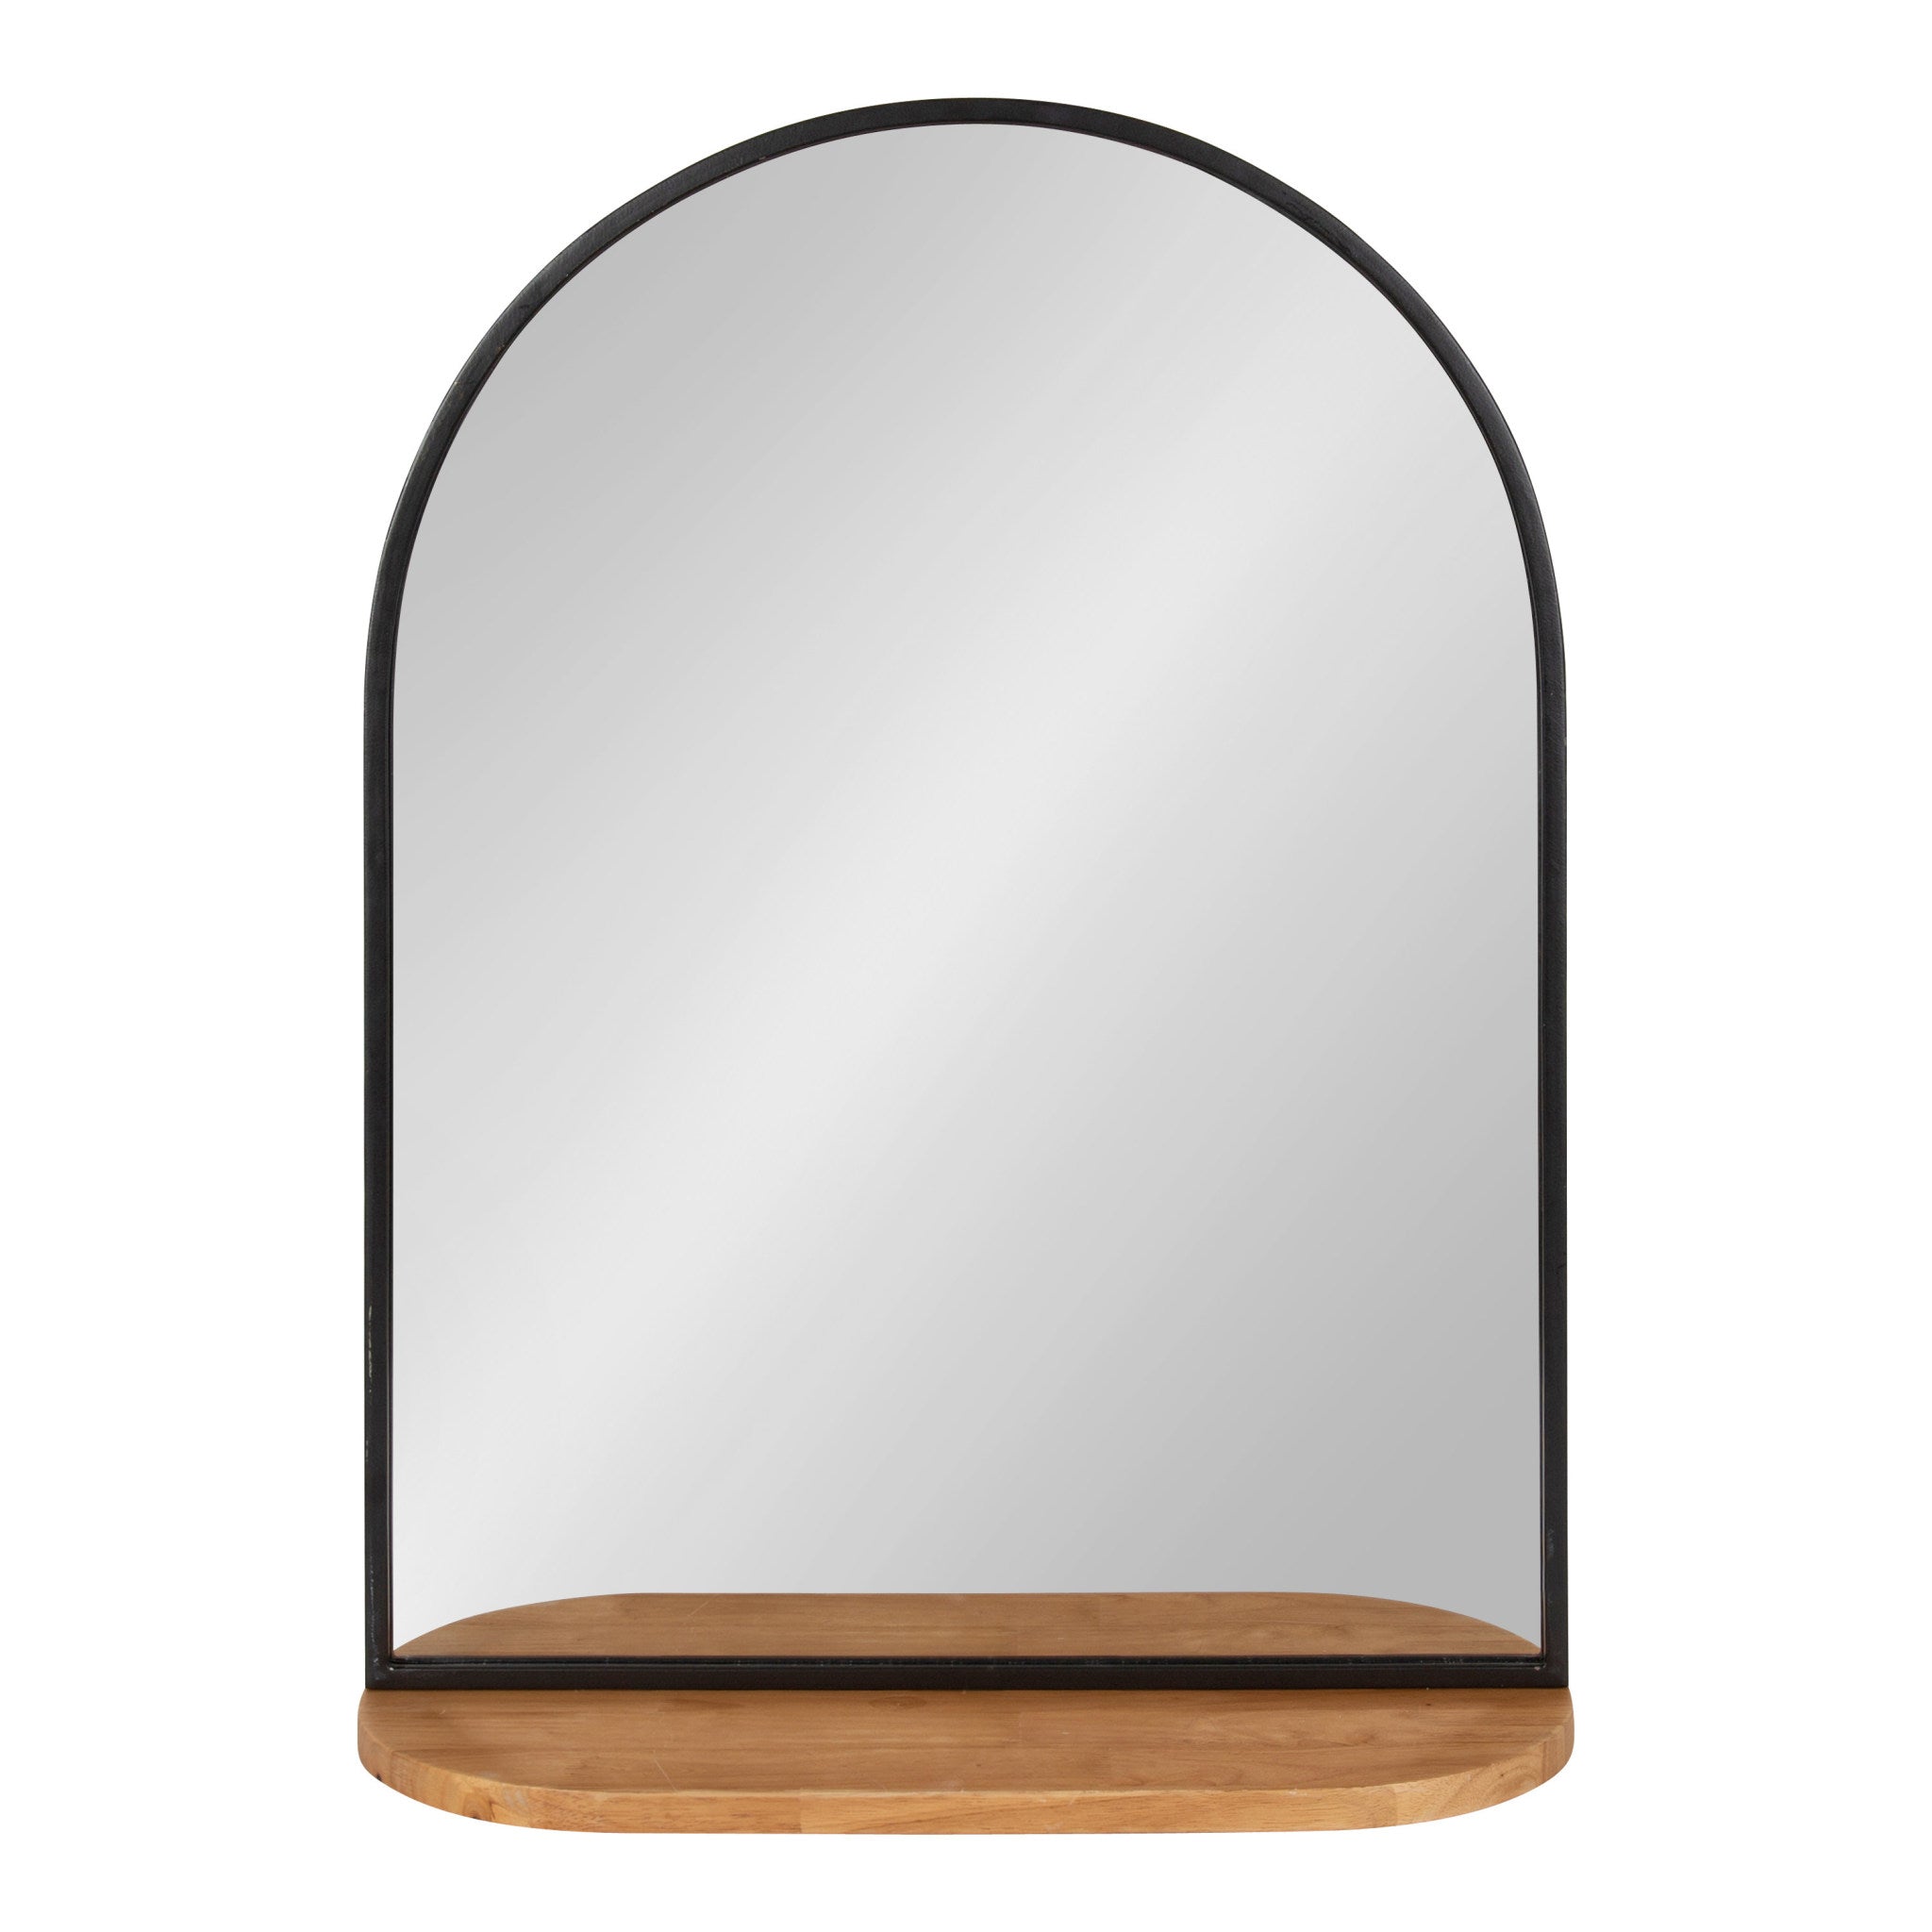 Schuyler Arch Wall Mirror with Shelf